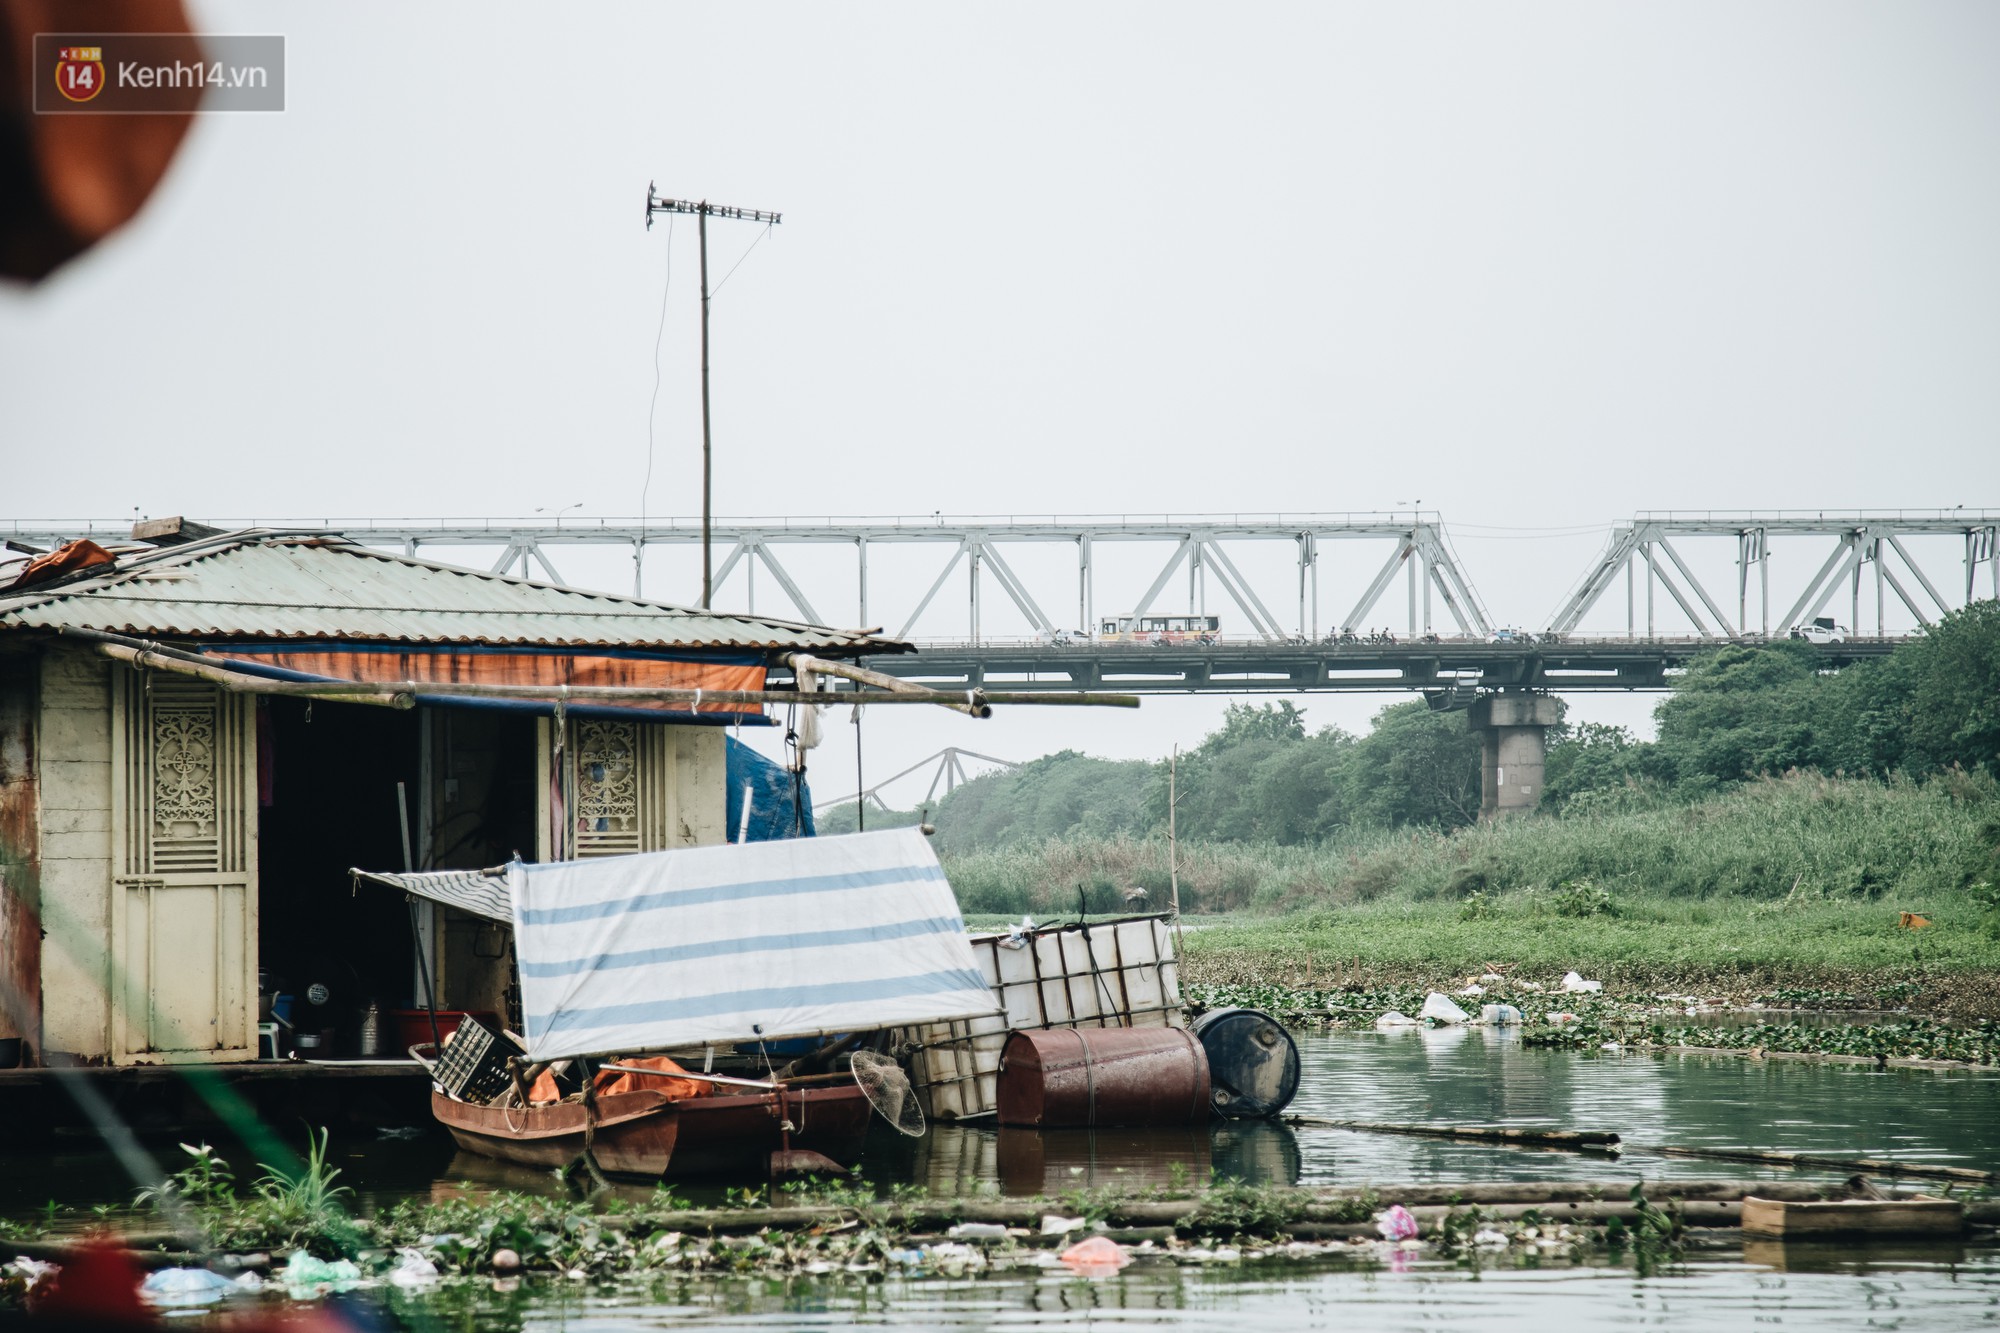 Cuộc sống lênh đênh trên thuyền của người lao động nhập cư ở Hà Nội: Chả có gì khó khăn, đông vui là chính - Ảnh 4.